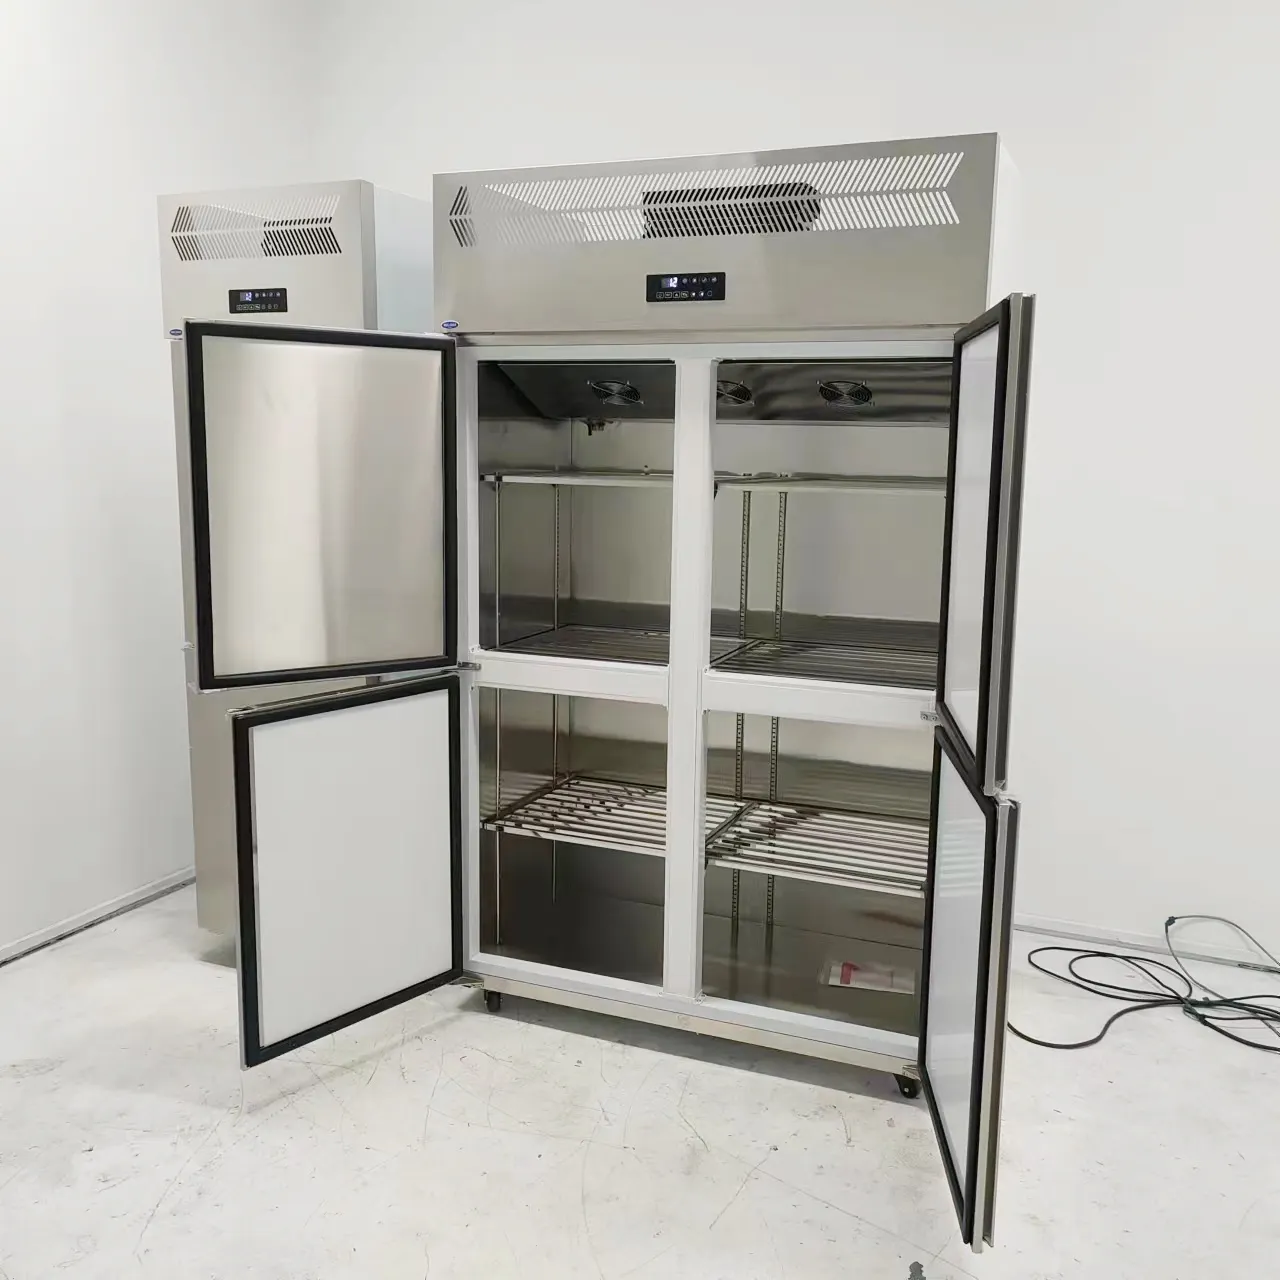 Geladeira de aço inoxidável com 4 portas, frigorífico, armário de cozinha, refrigeração, bebidas, geladeira upright, congelador